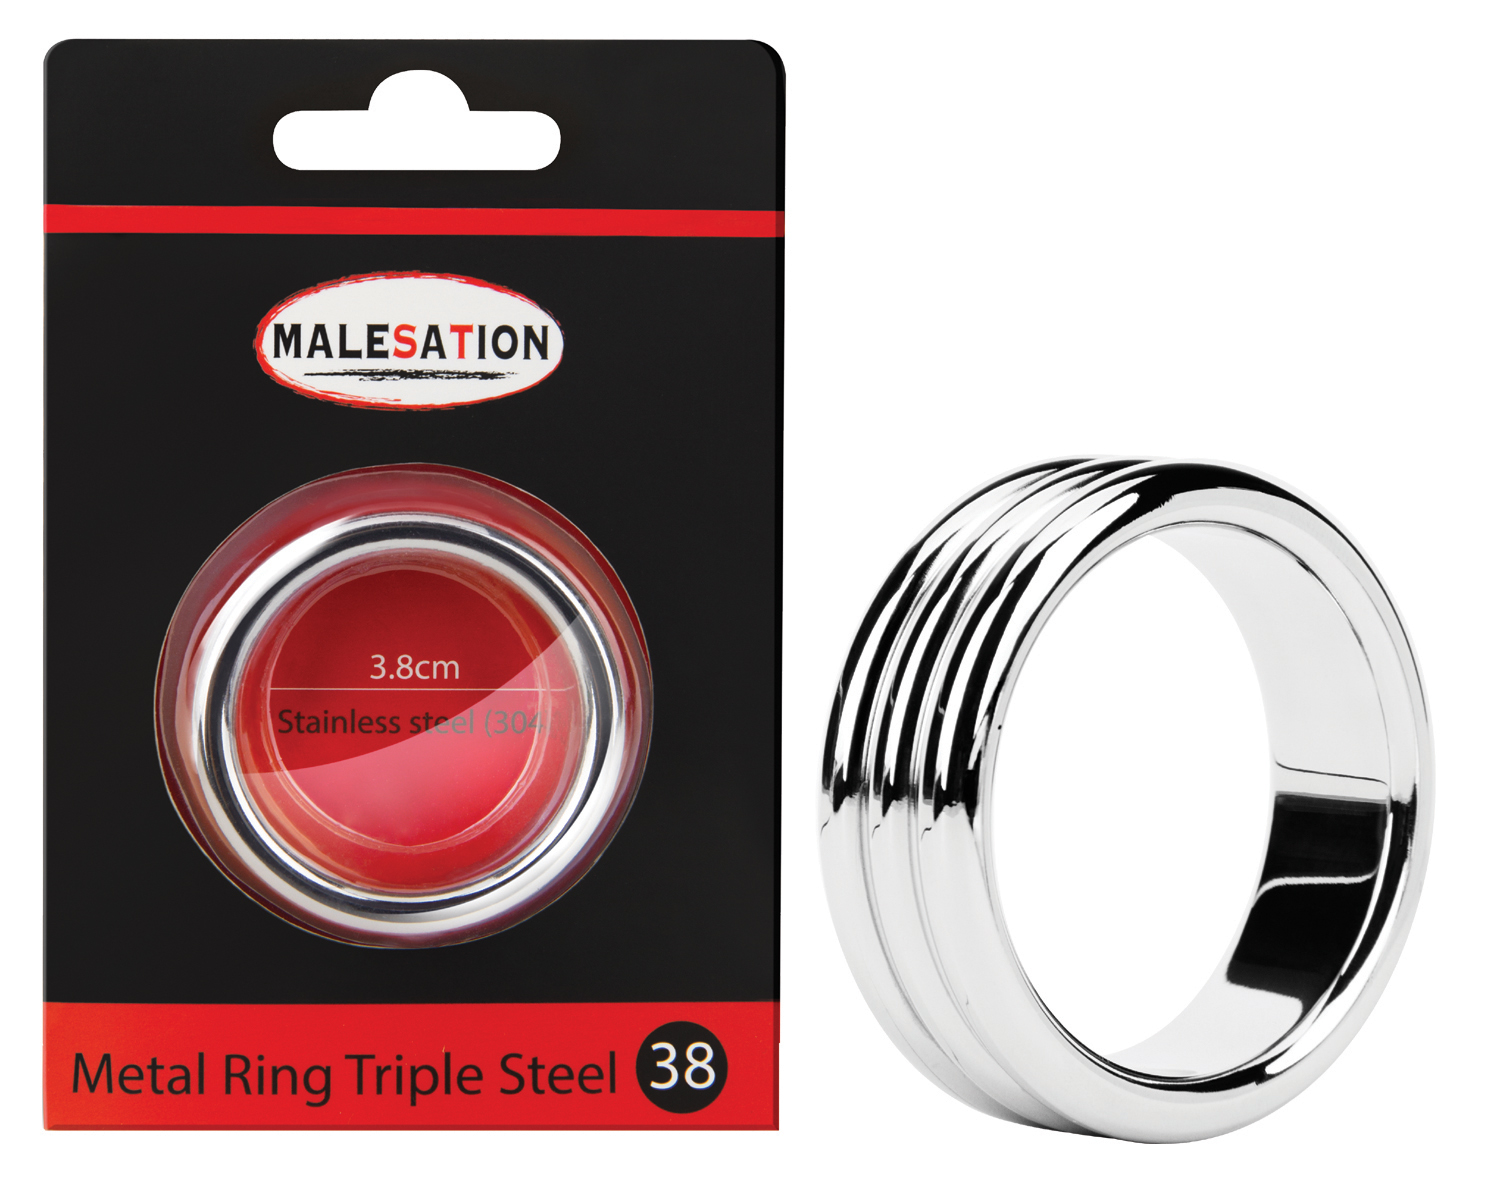 MALESATION Metal Ring Triple Steel 38